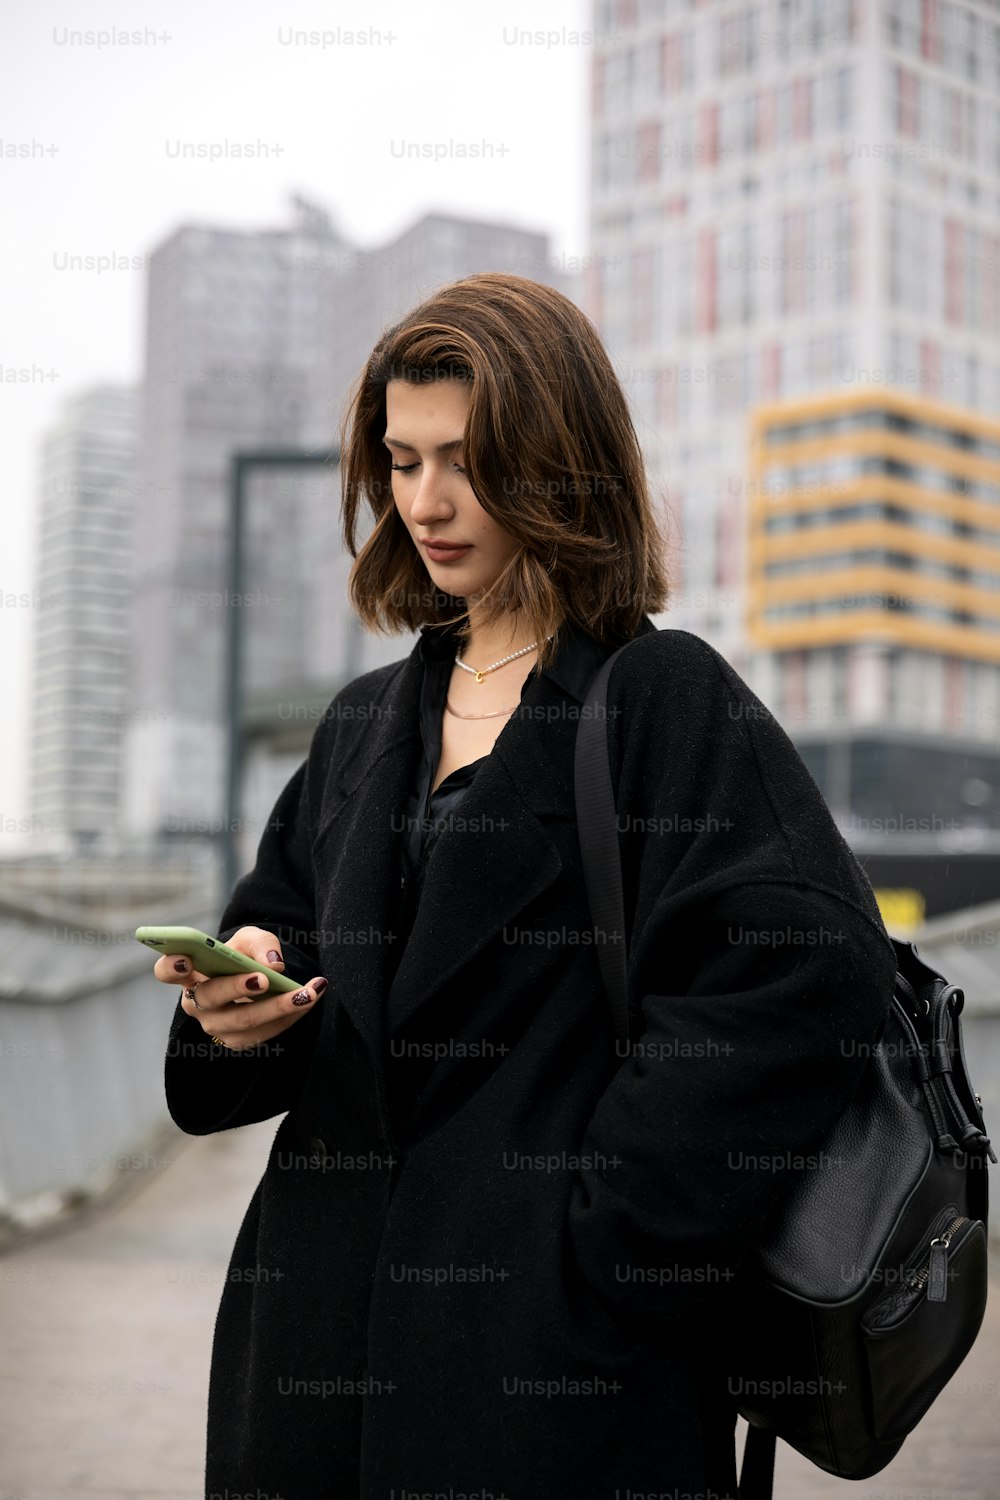 검은 코트를 입�은 여자가 휴대폰을 보고 있다